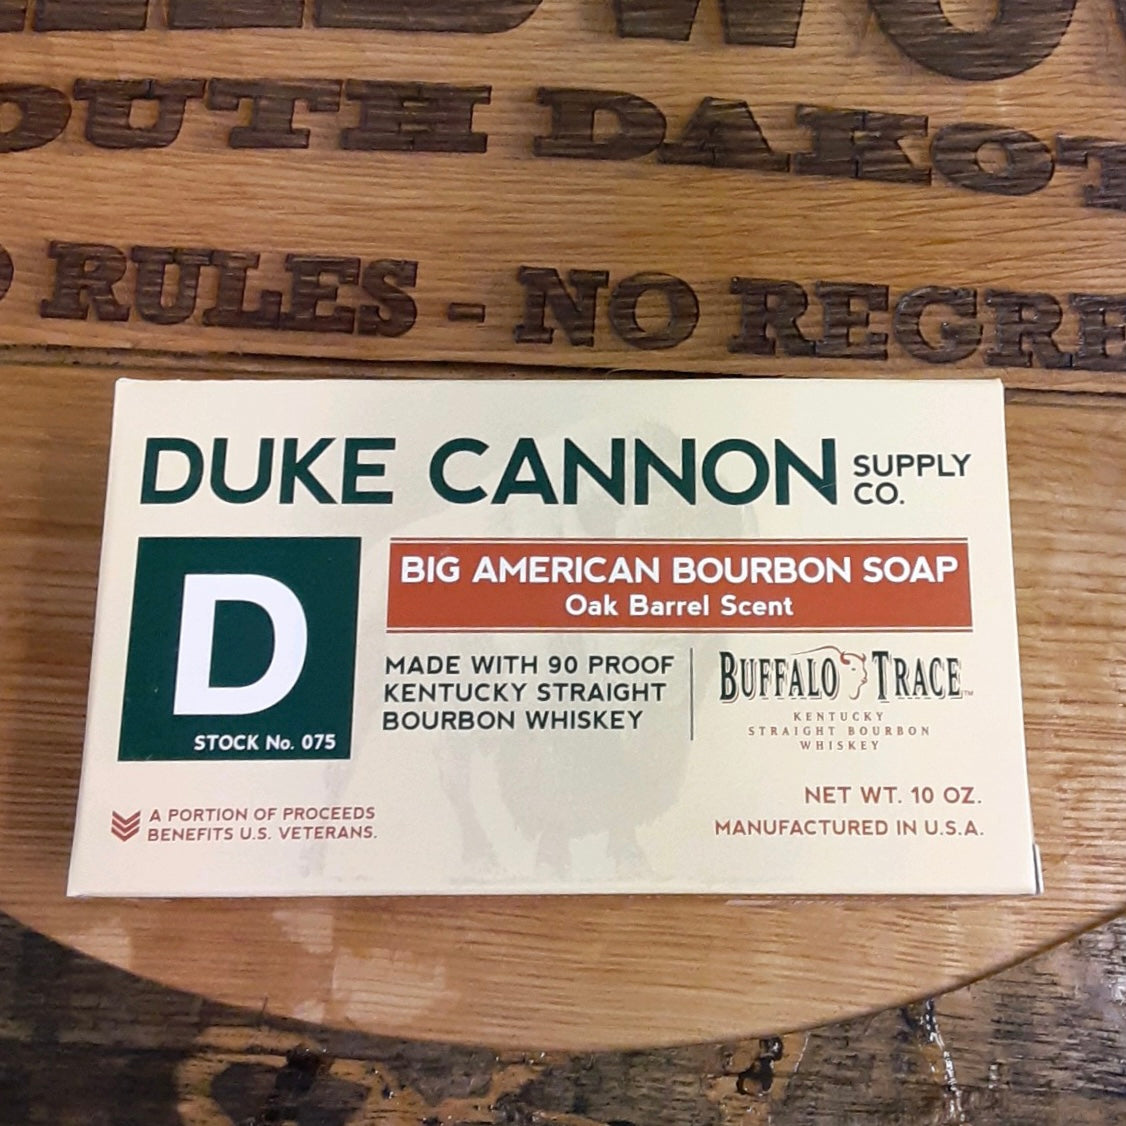 Duke Cannon Supply Co. Buffalo Trace Bourbon Soap, Big American, Oak Barrel Scent - 10 oz